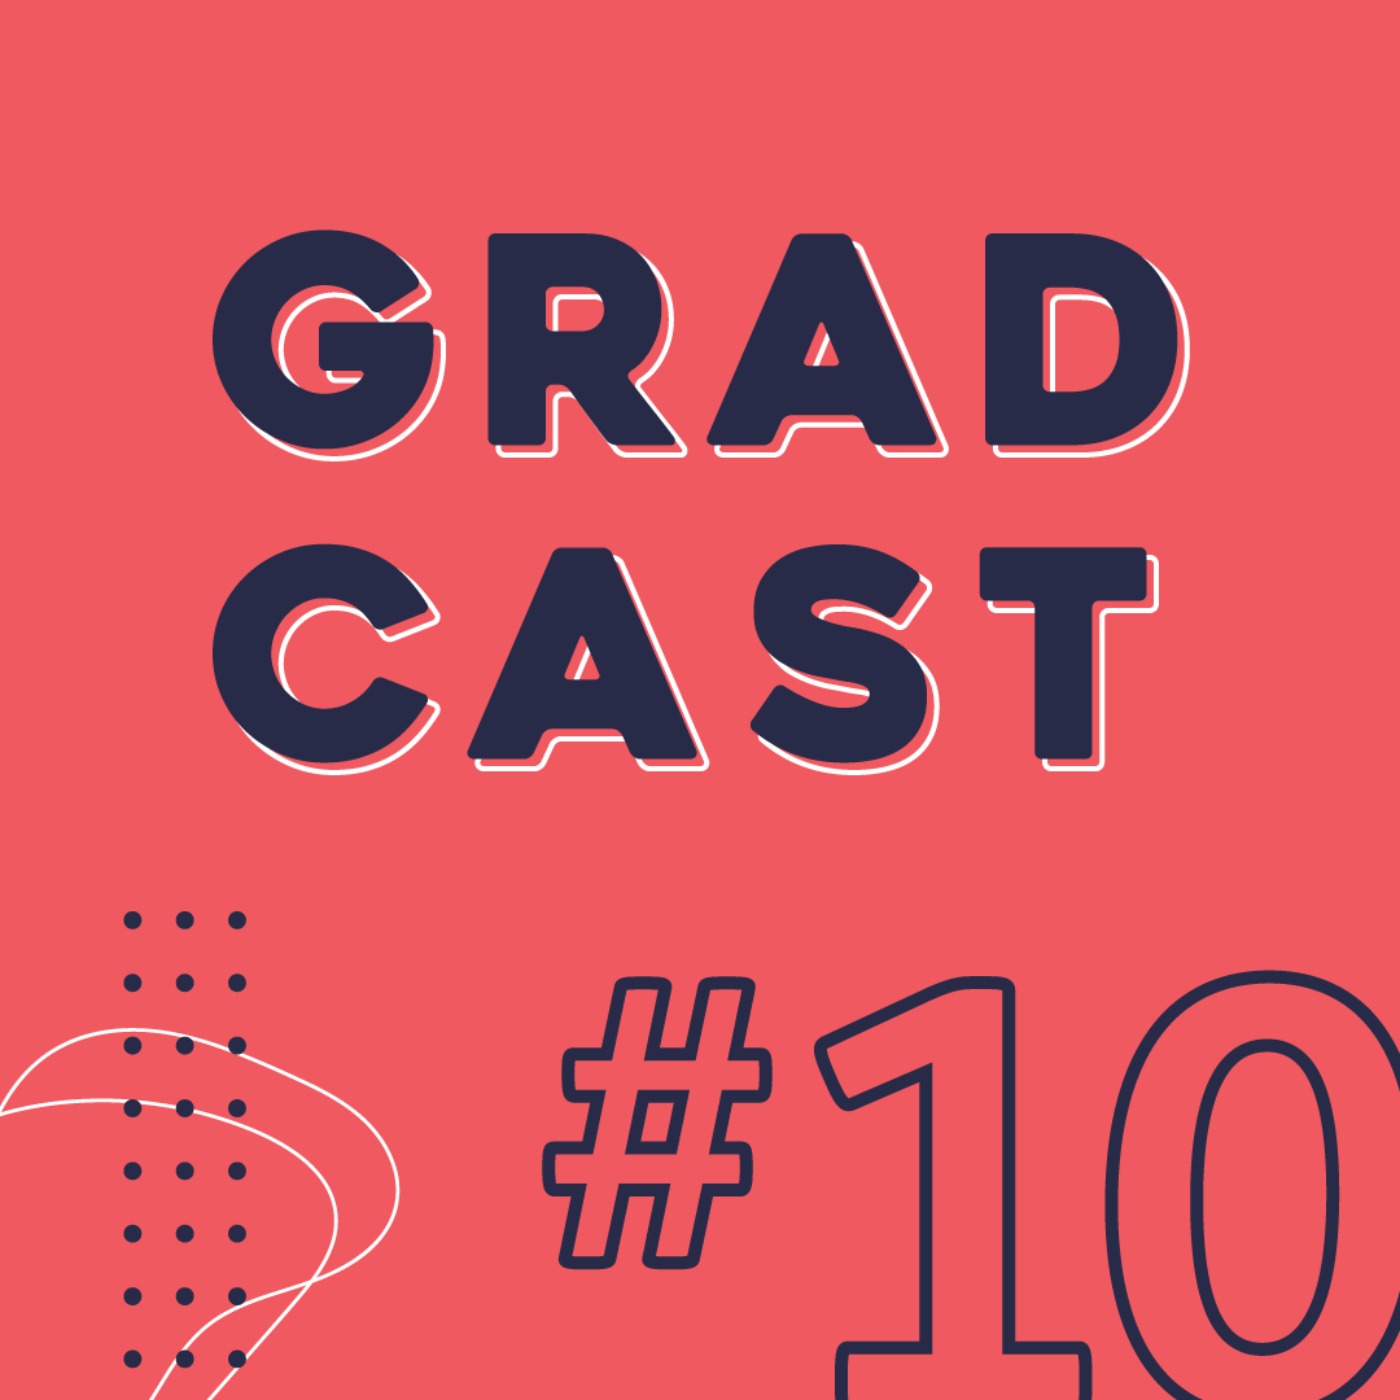 10 APS Graduate Program 101 (Part 1) Gradcast on Acast